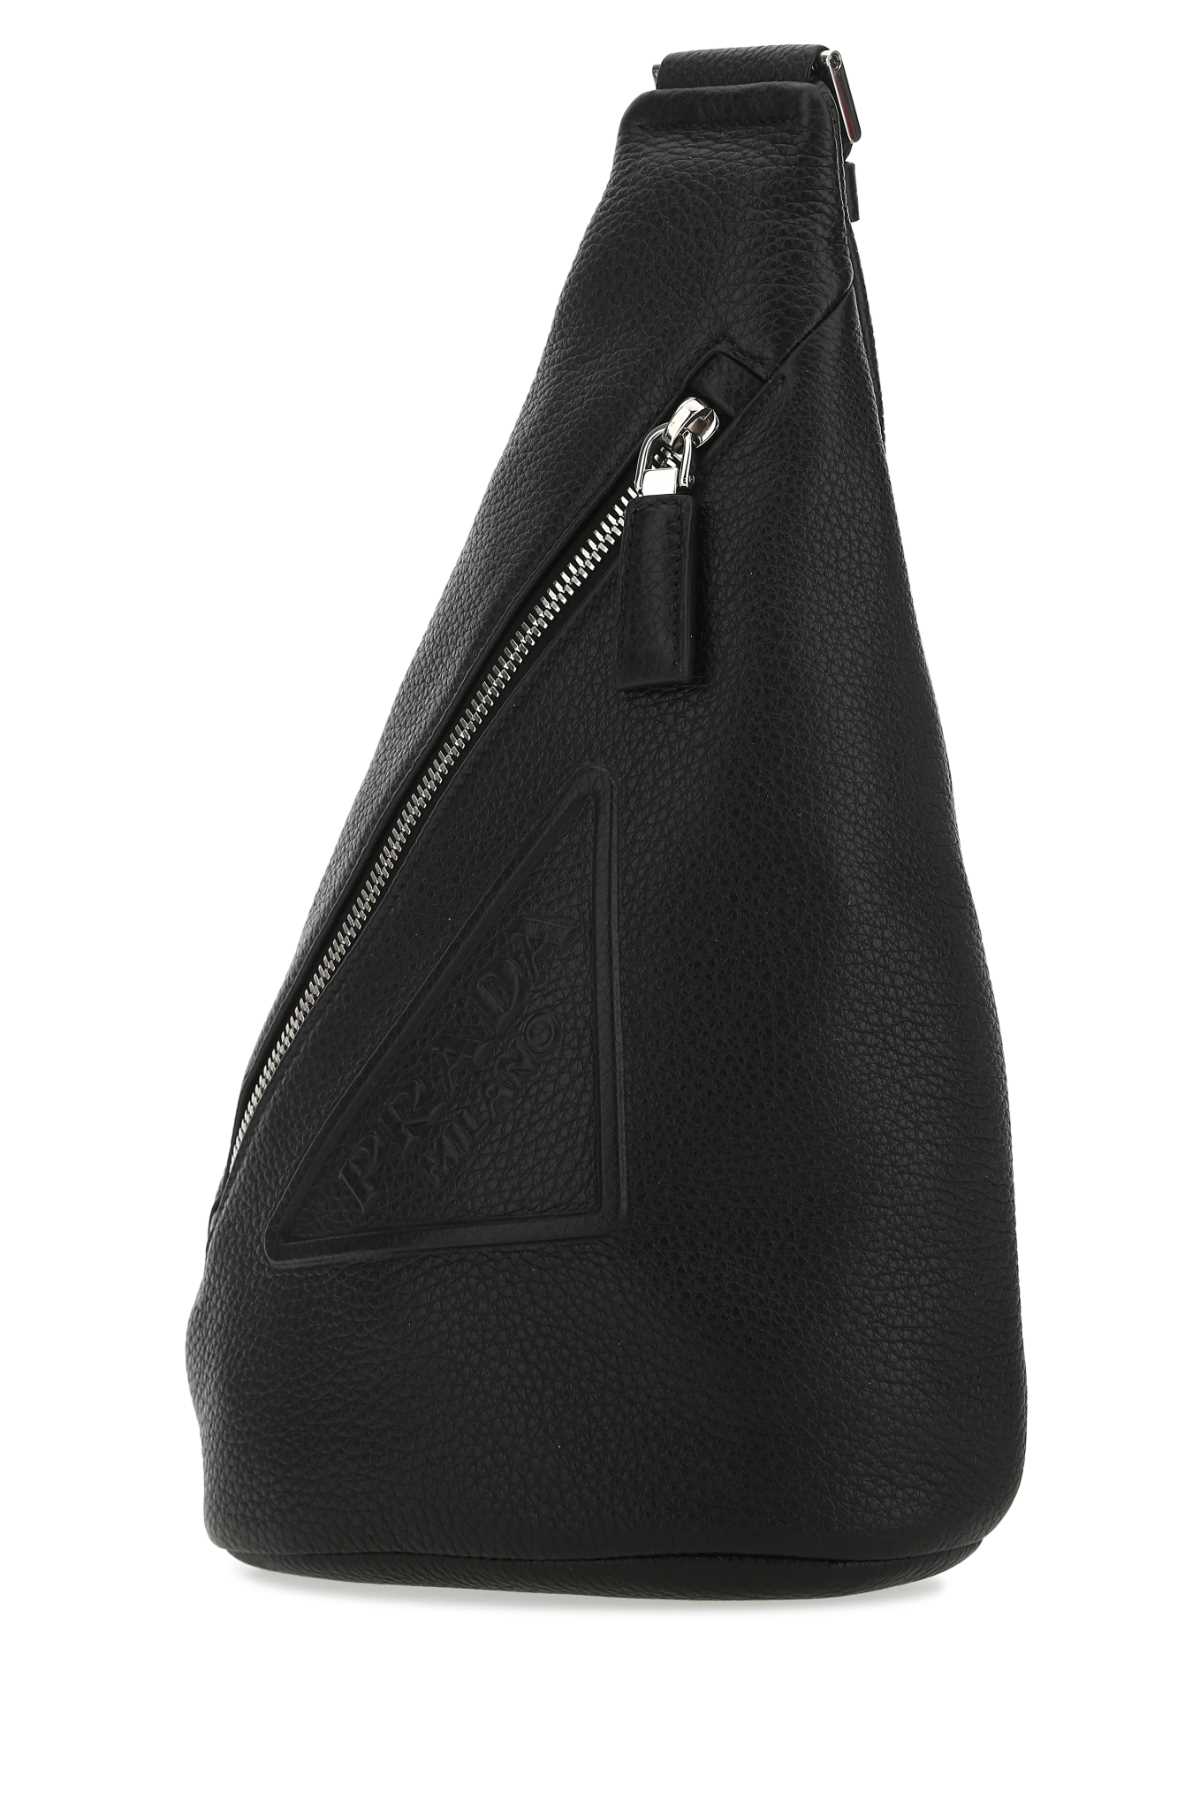 Prada Black Leather Backpack In F0002